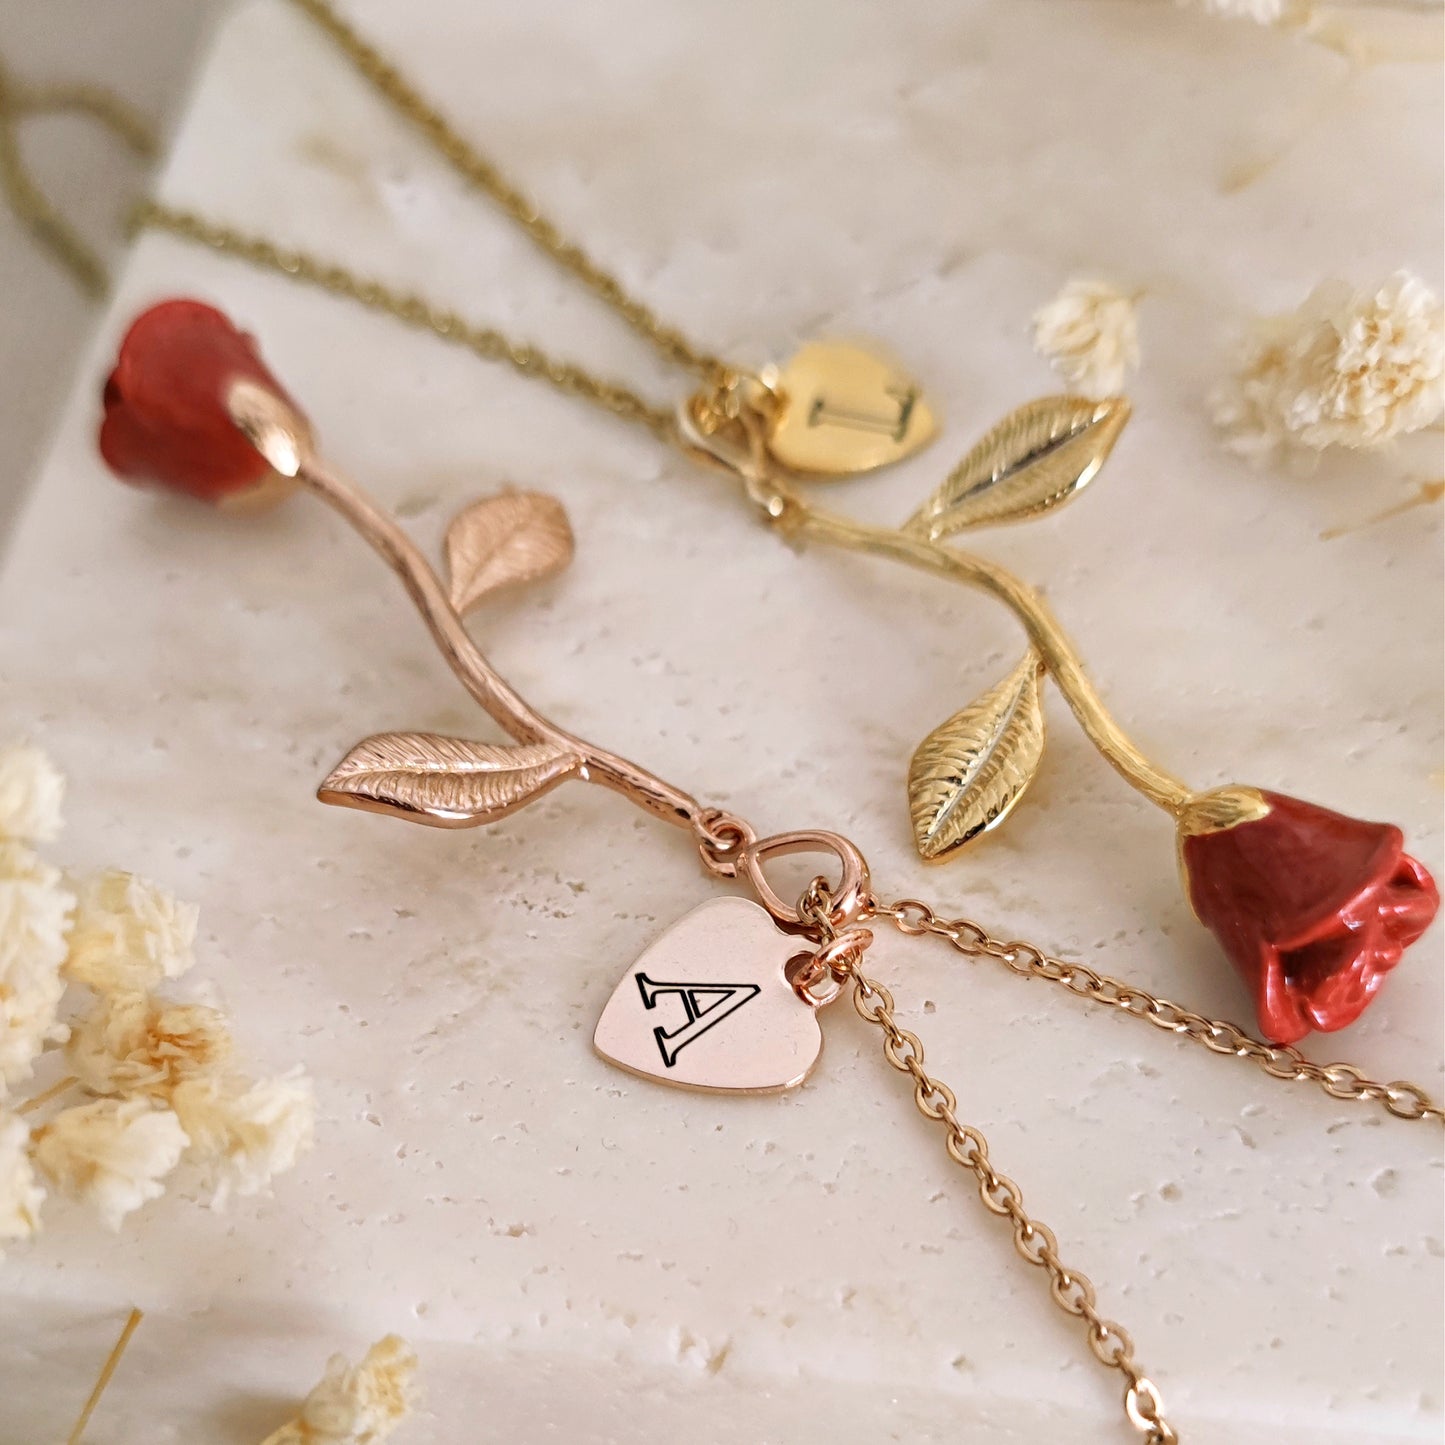 "Enchanted Rose" necklace with enameled bud